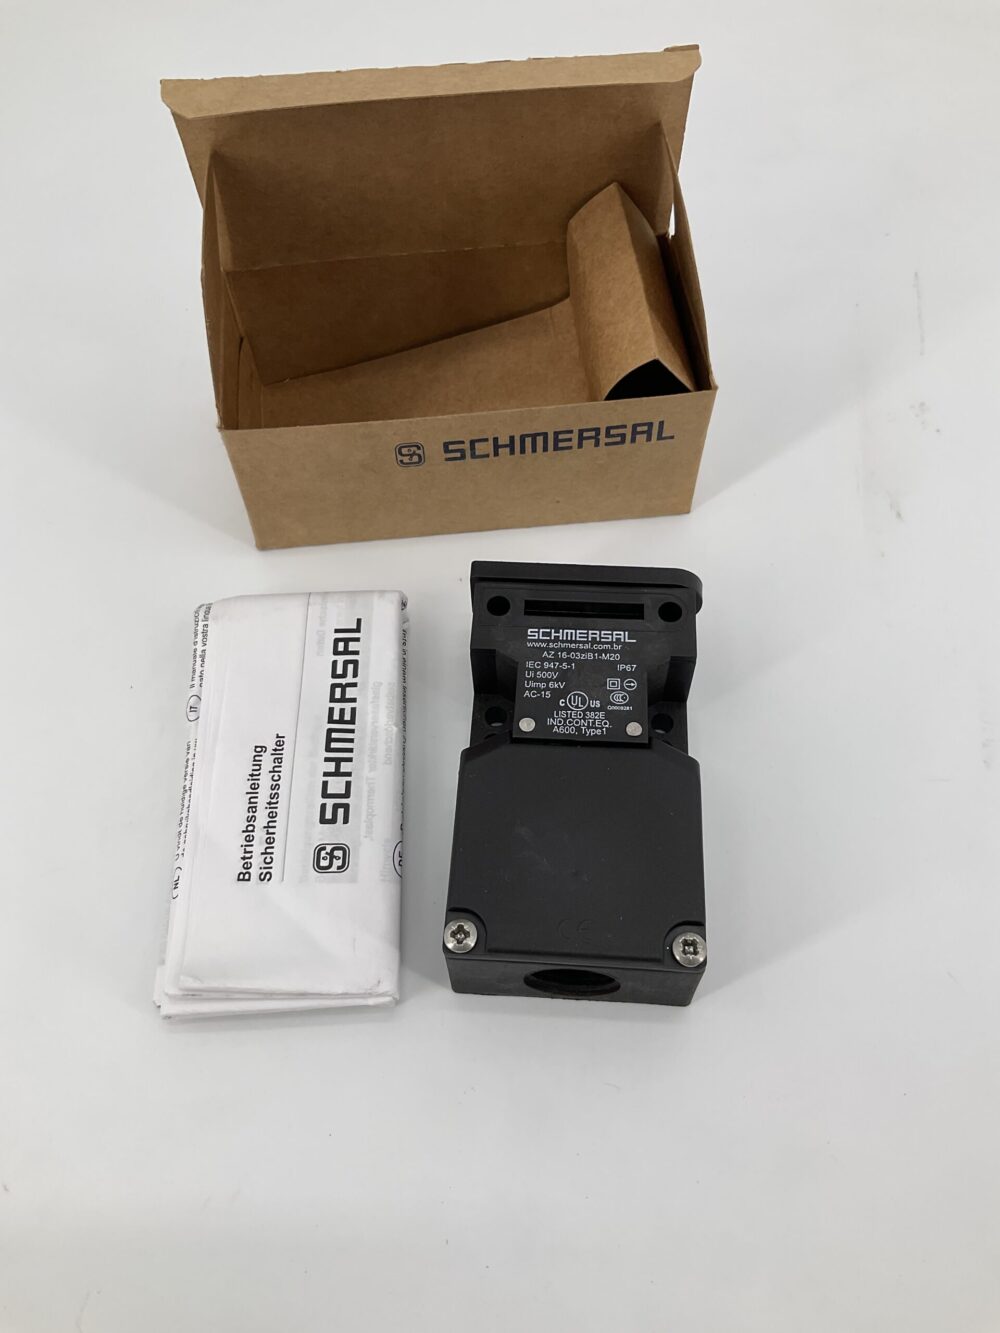 New Original Sealed Package SCHMERSAL AZ 16-03ziB1-M20